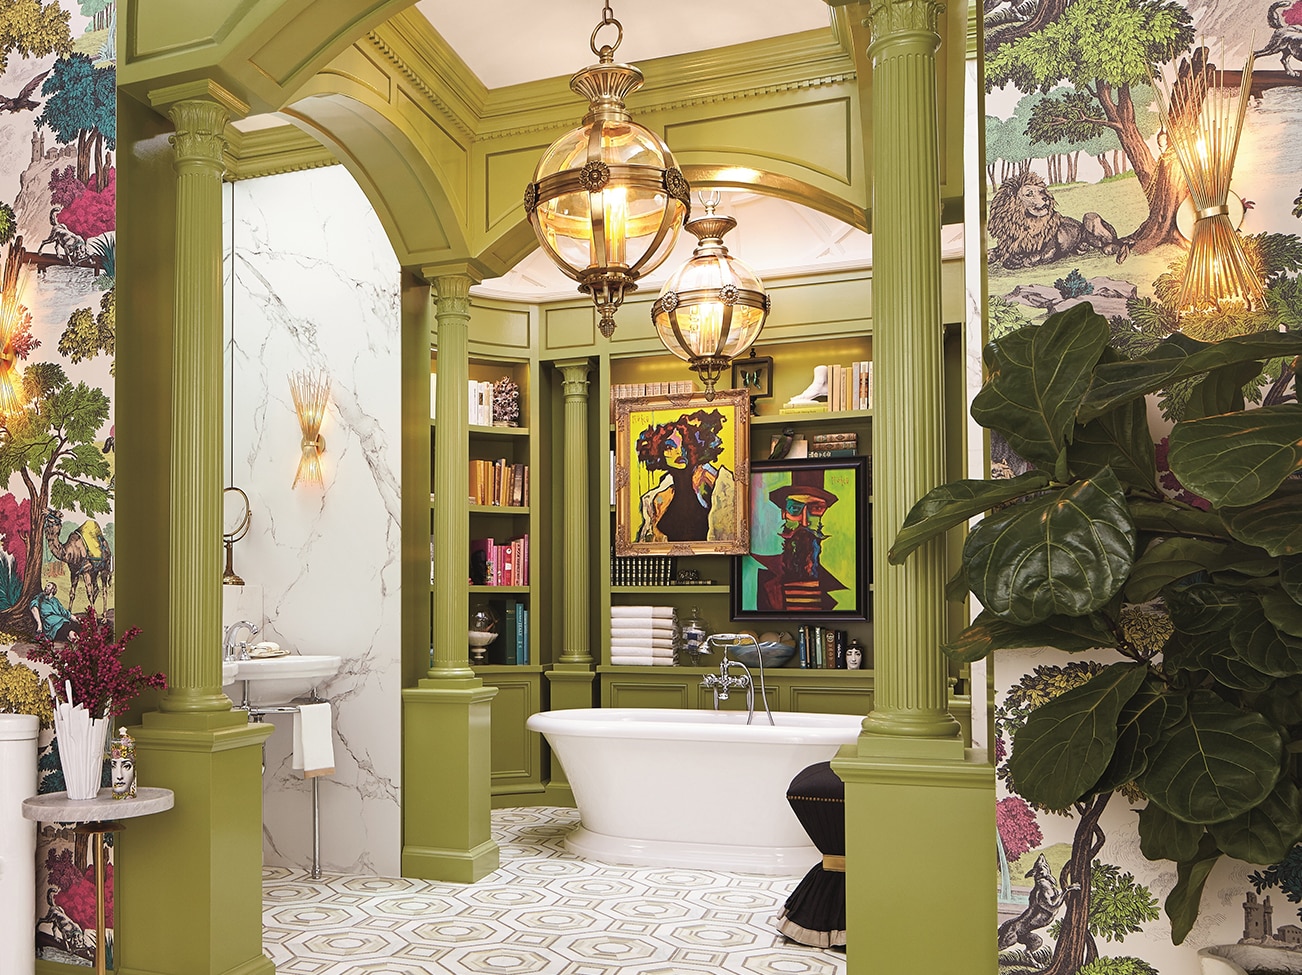 Salle de bains principale aux colonnes et alcôves peintes en vert, baignoire ovale blanche avec œuvres d’art et étagères, papier peint aux motifs végétaux et plancher aux carreaux géométriques.